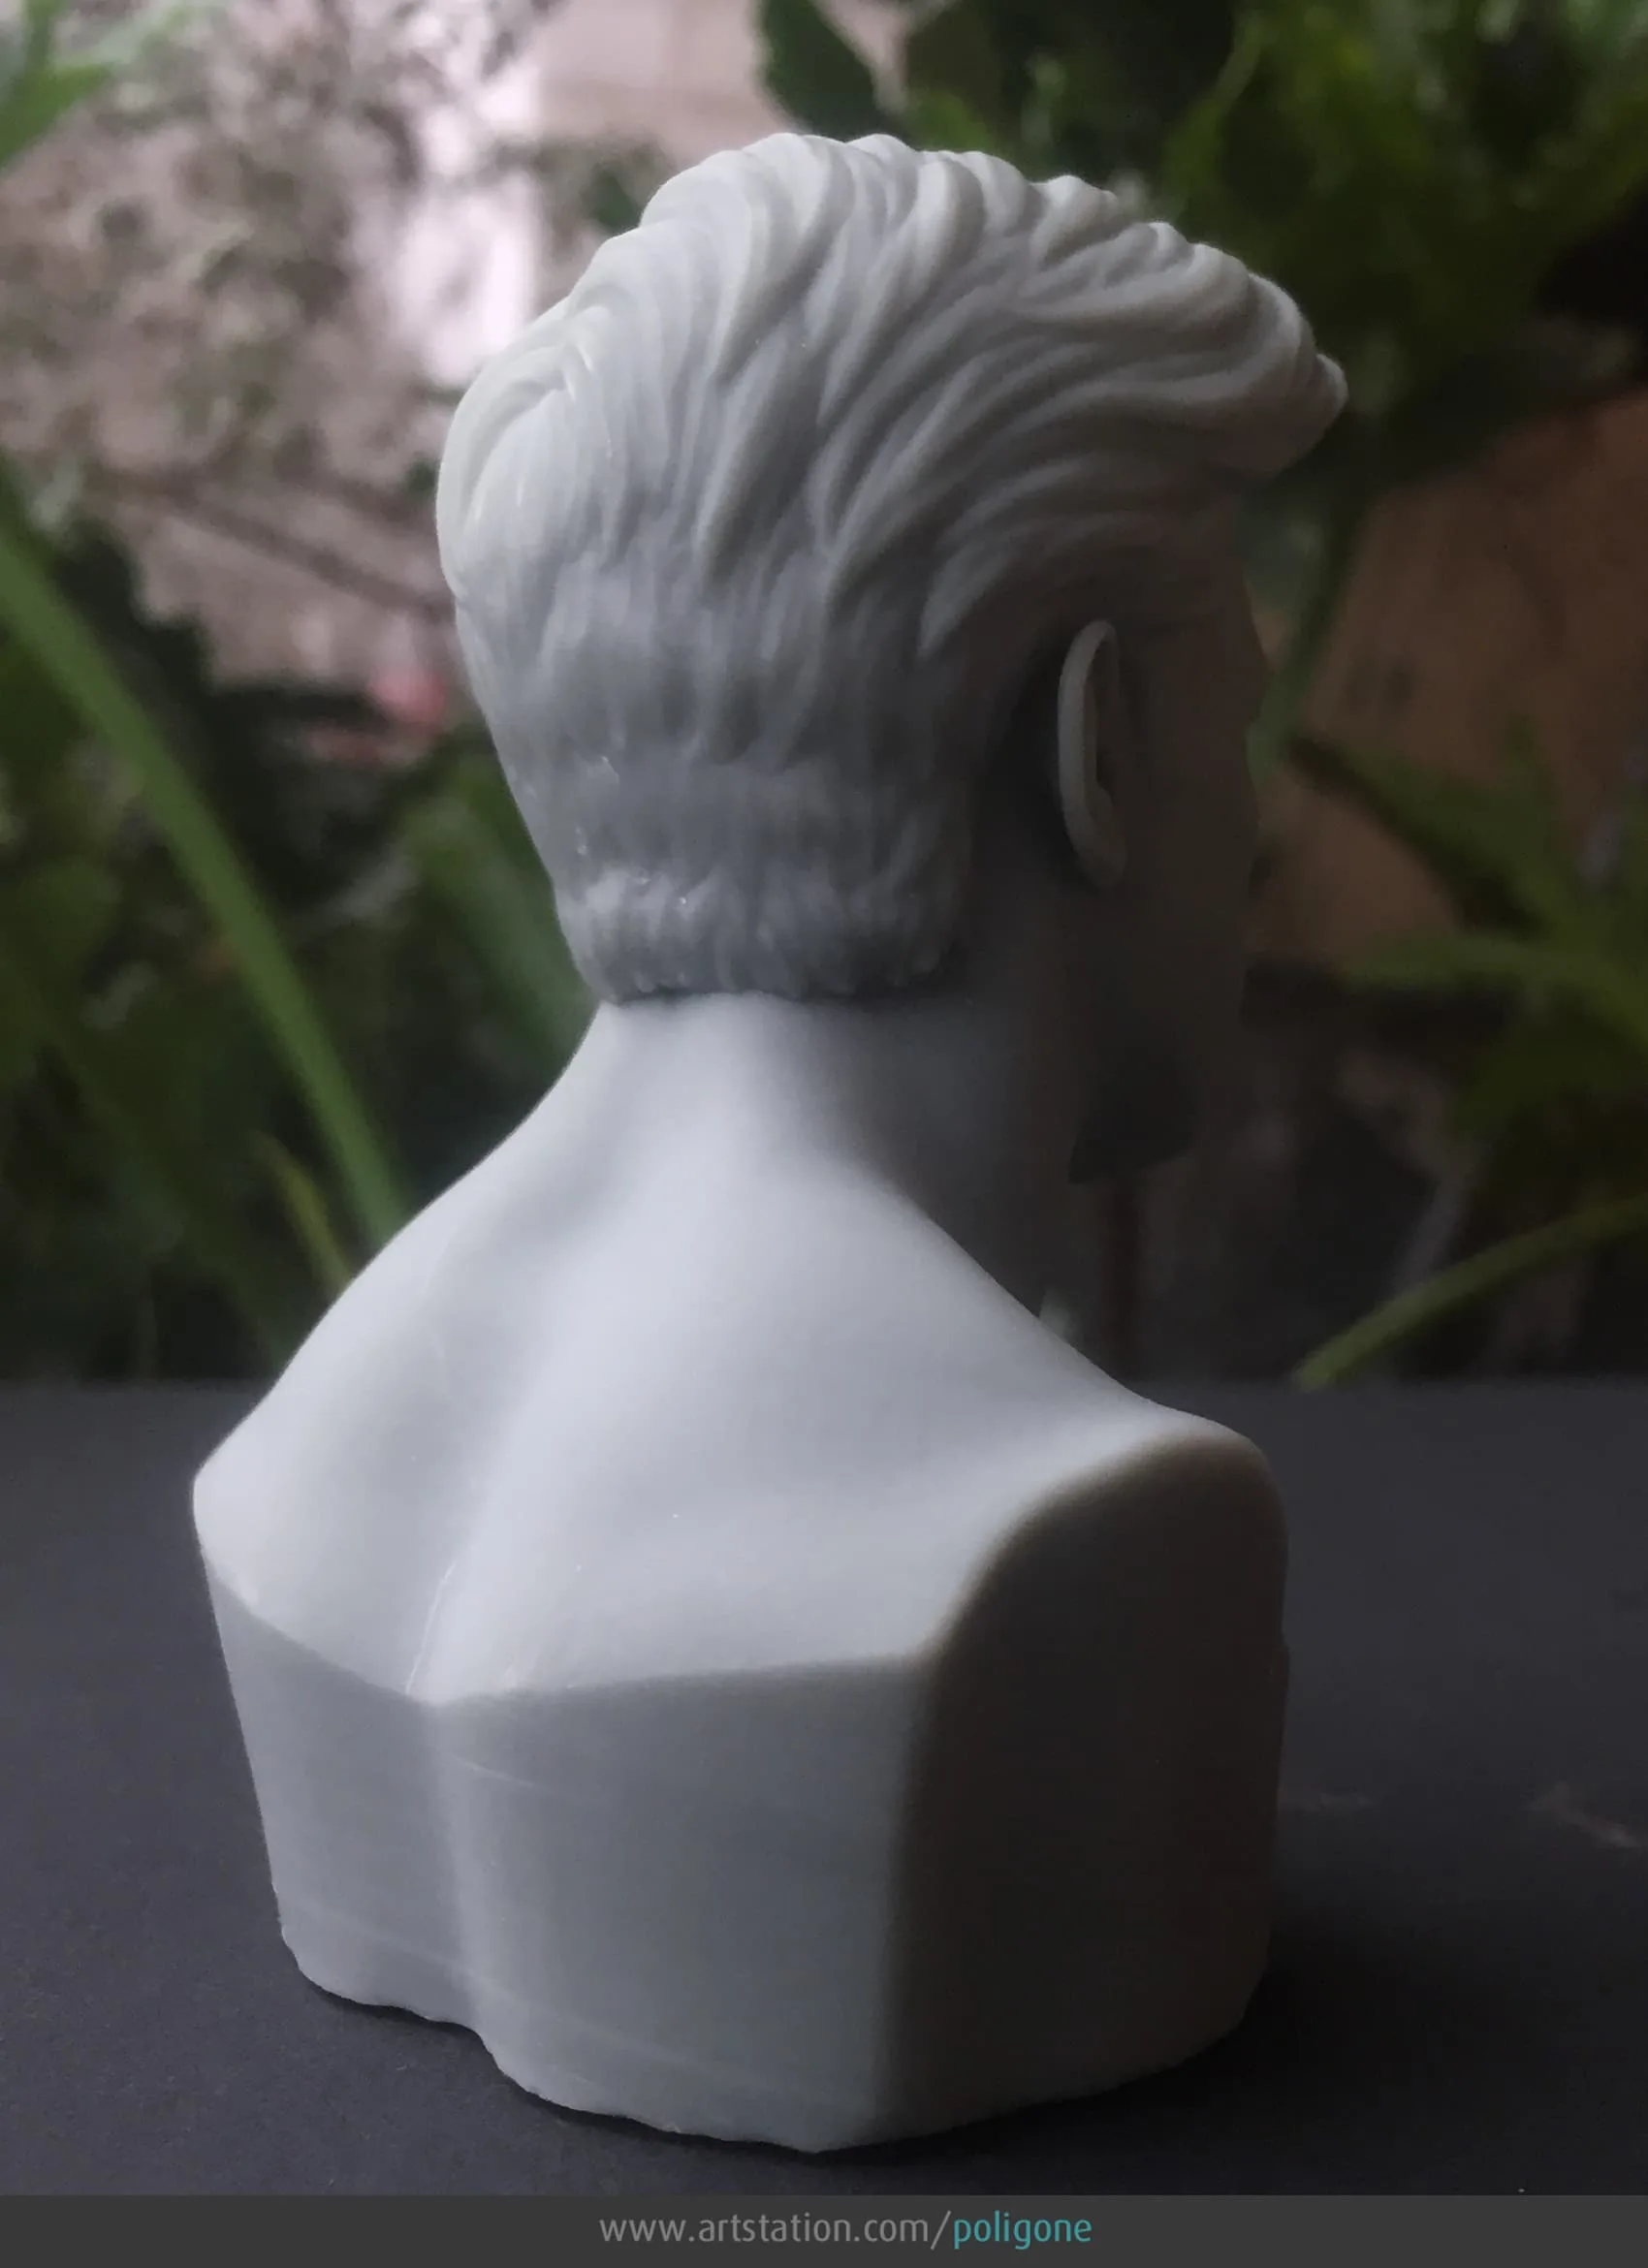 Ben Affleck Head - 3D Printable